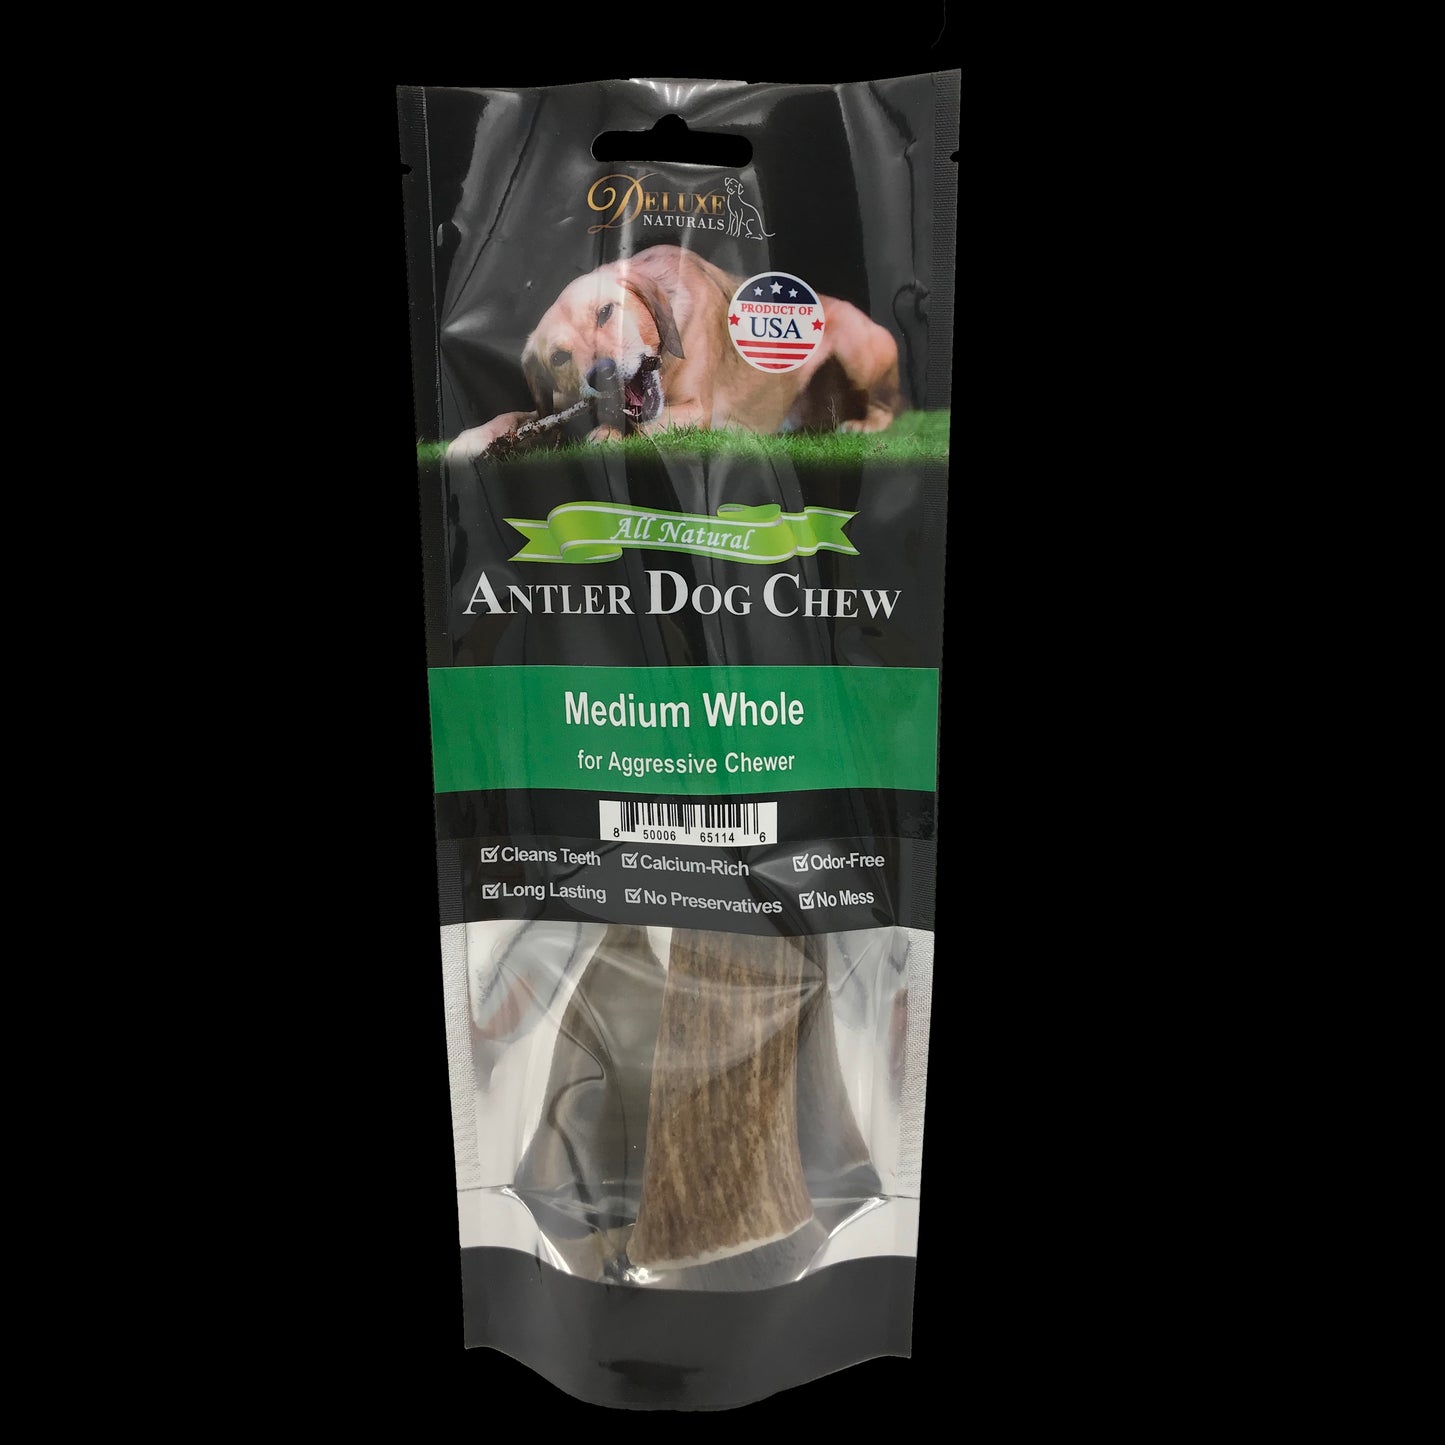 Deluxe Naturals Elk Antler Dog Chew - Medium Whole